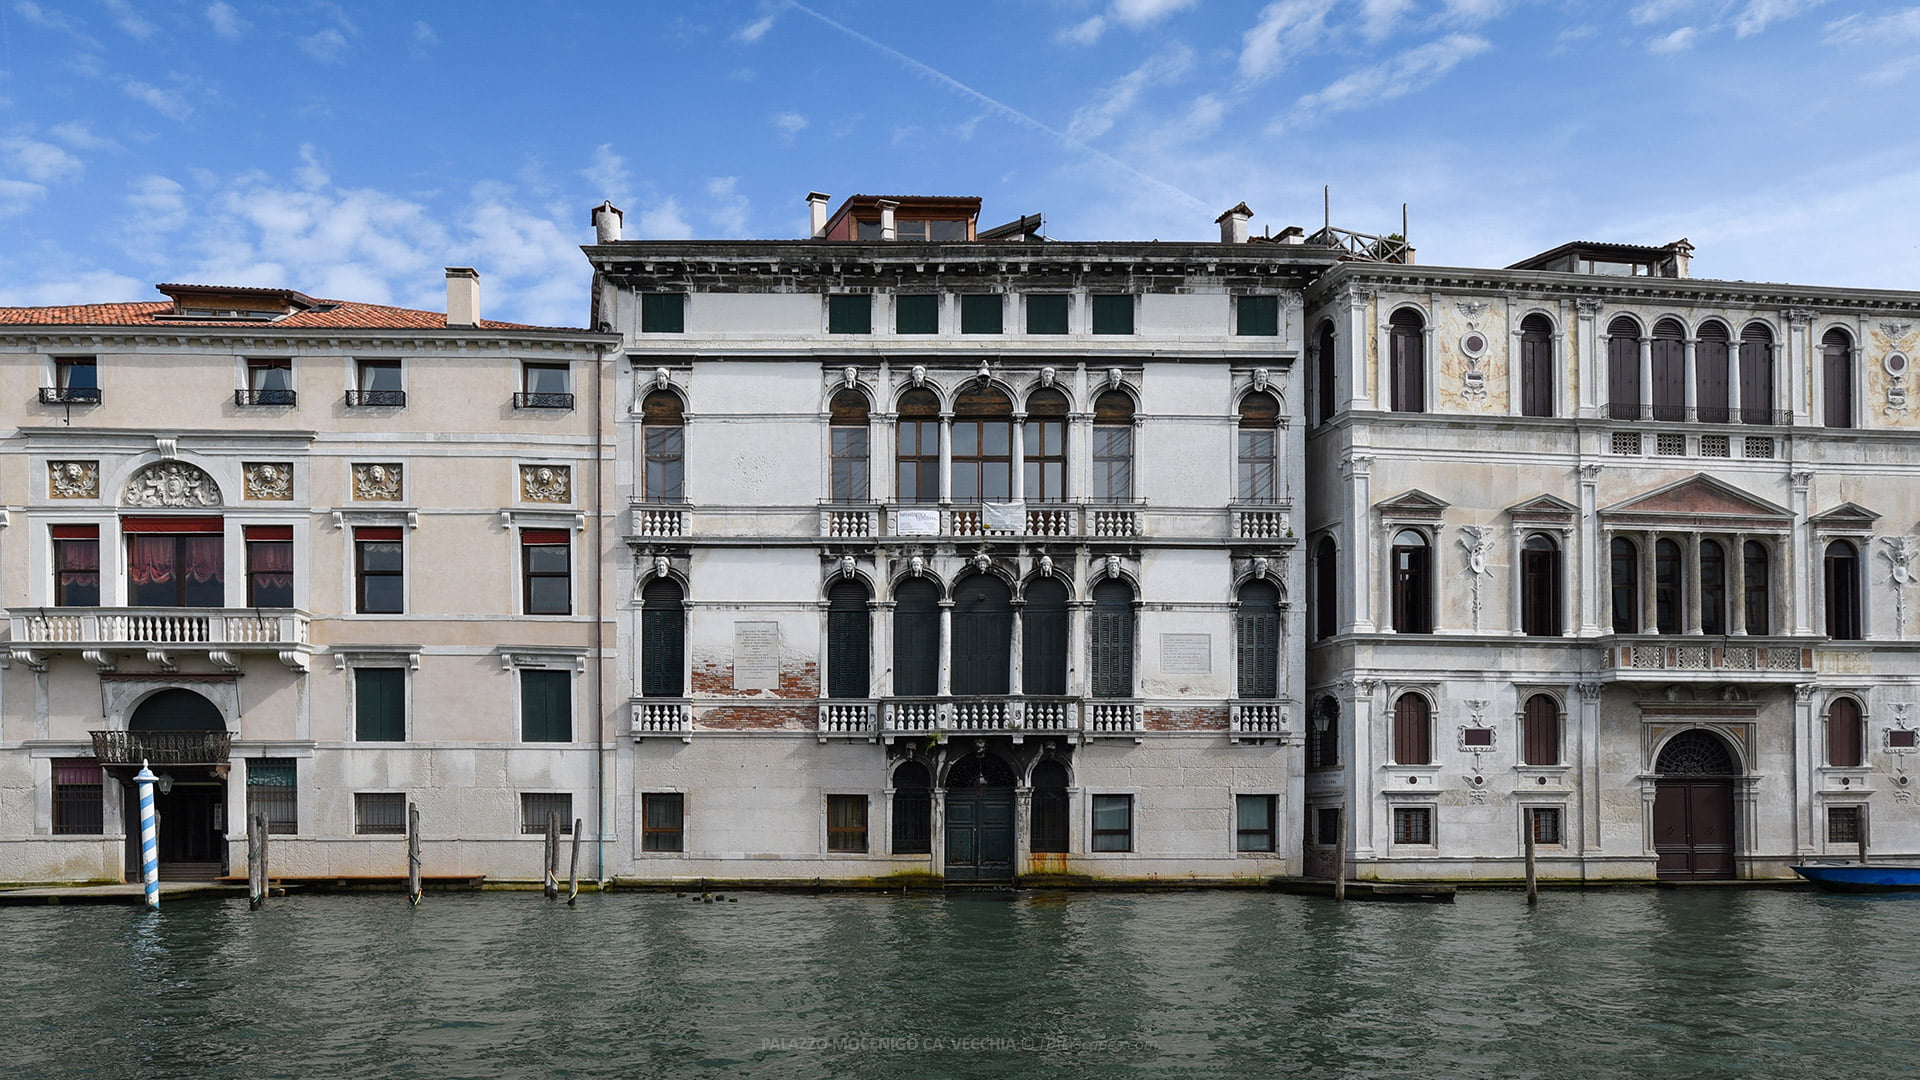 Palazzo Mocenigo Ca' Vecchia - Venice